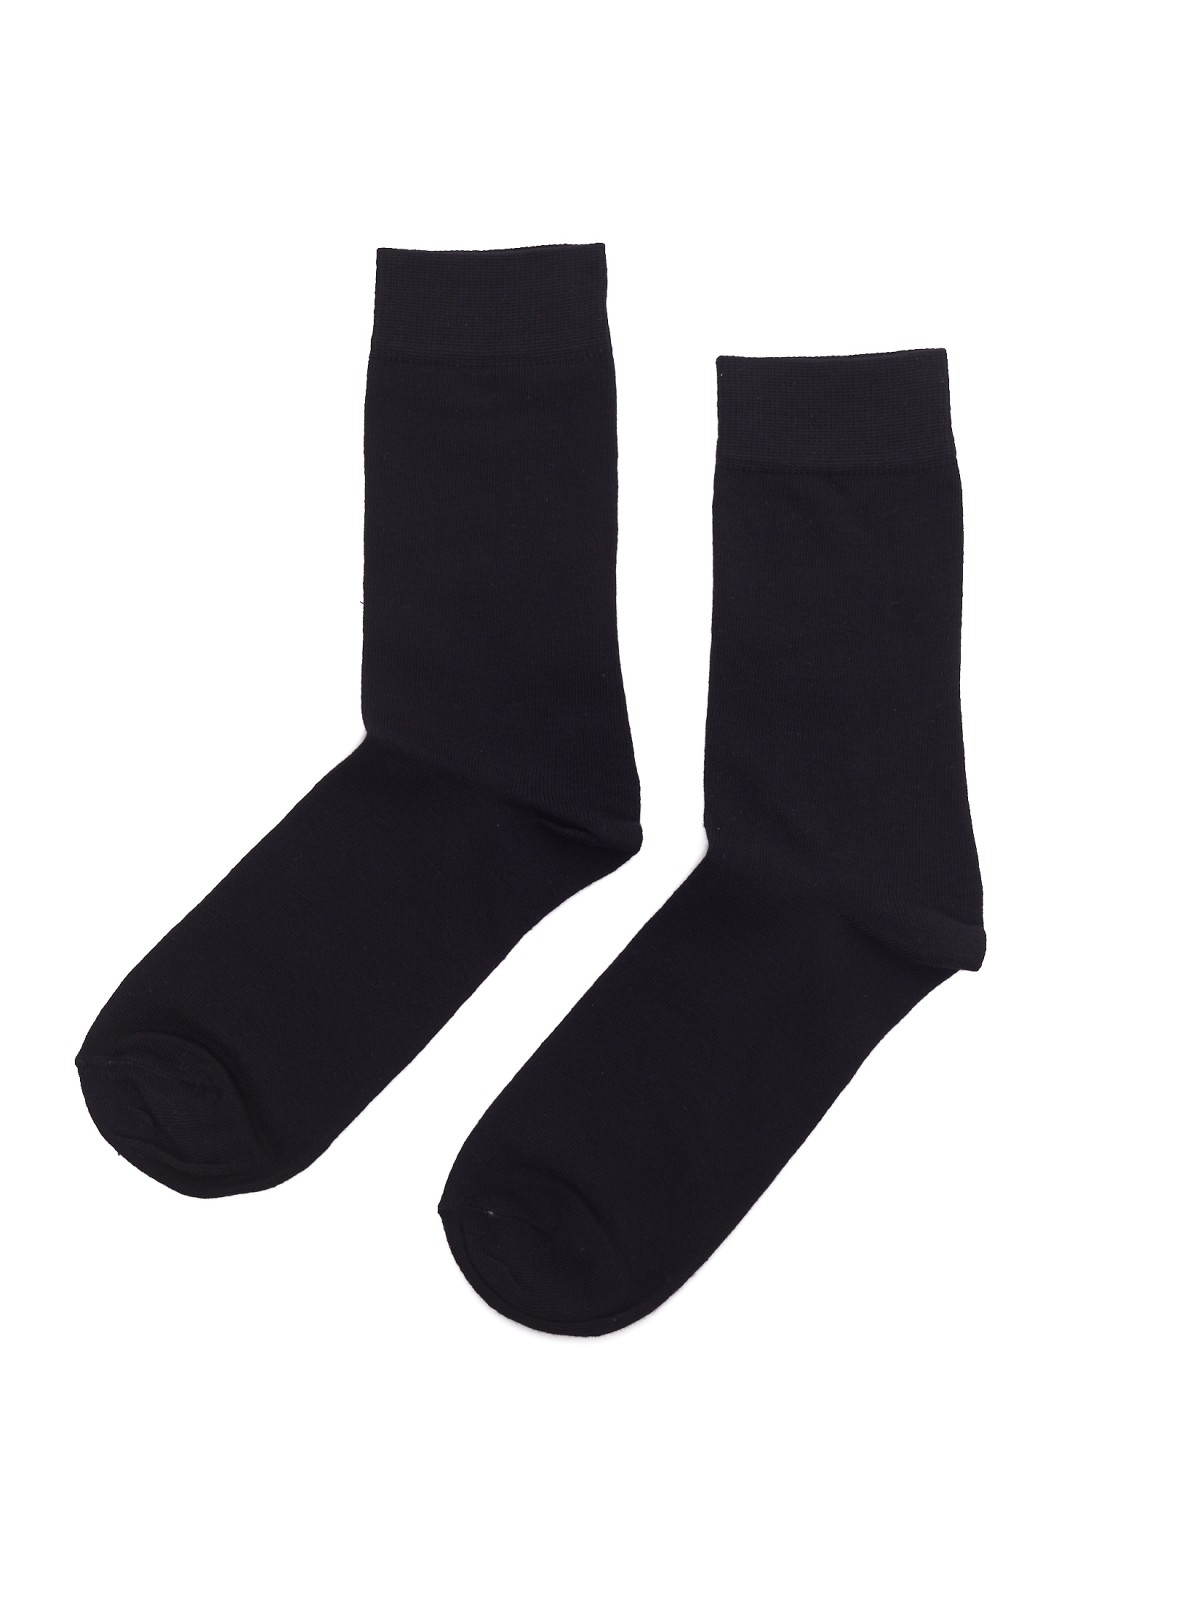 Набор носков (3 пары в комплекте) zolla 01211998J255, цвет черный, размер 25-27 - фото 2